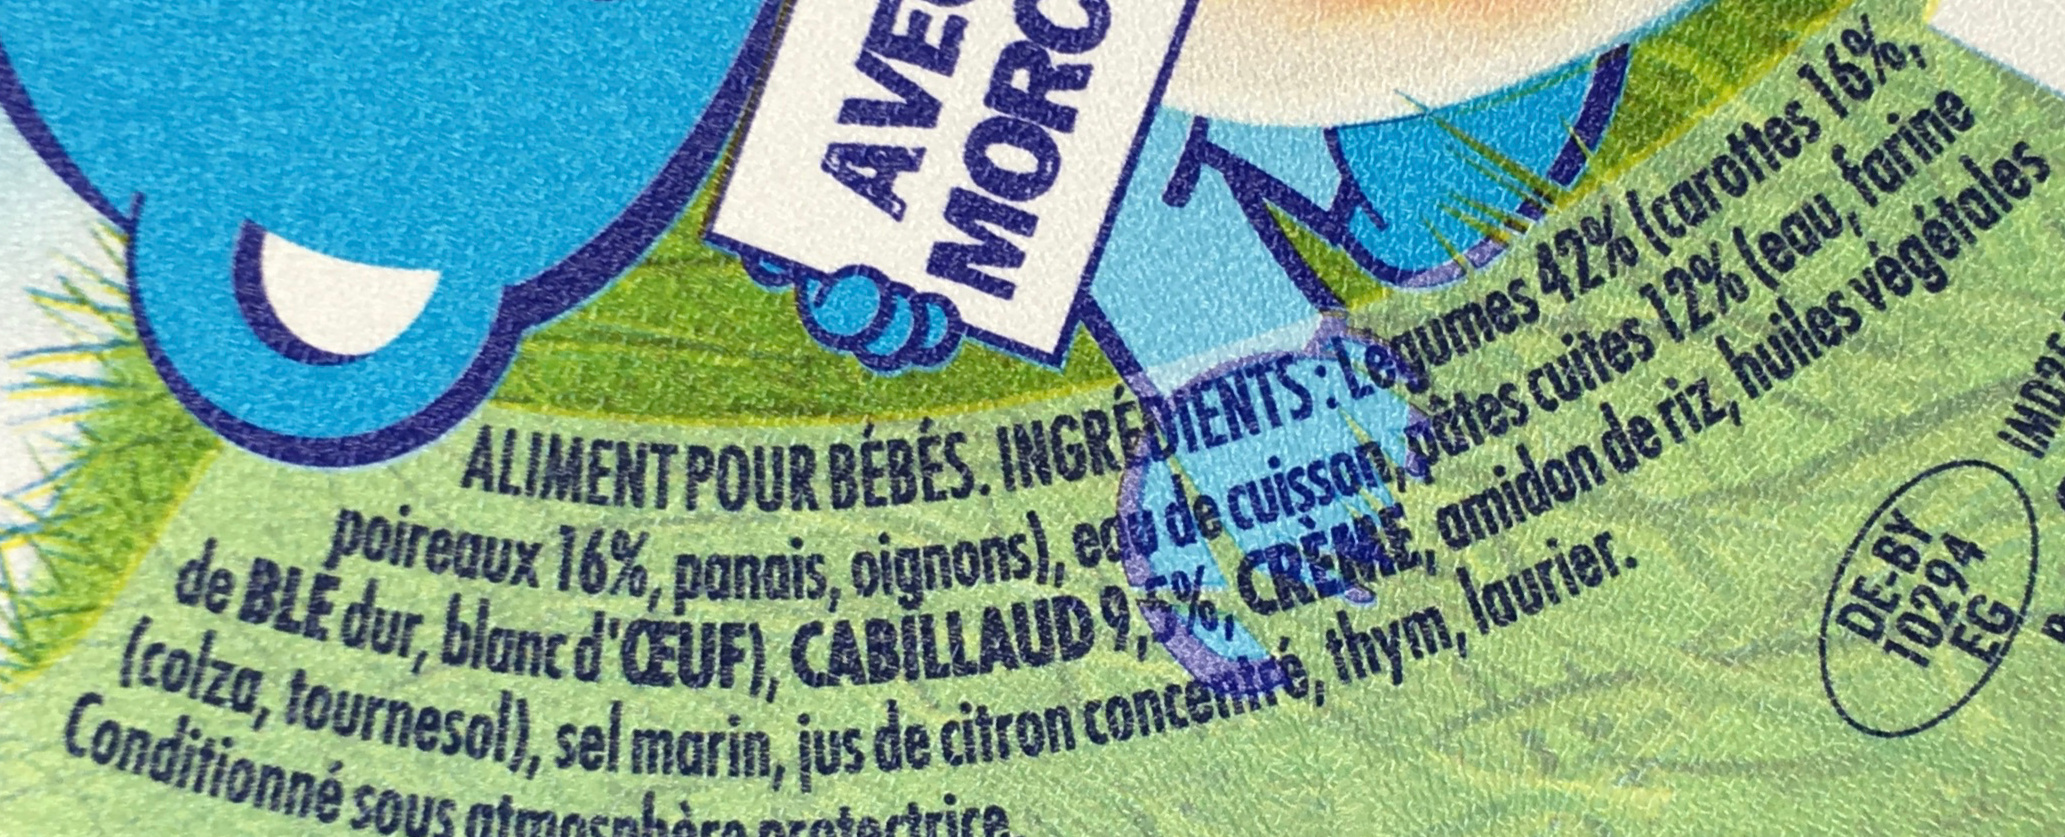 NaturNes - Aliment pour bébés - Ingredients - fr